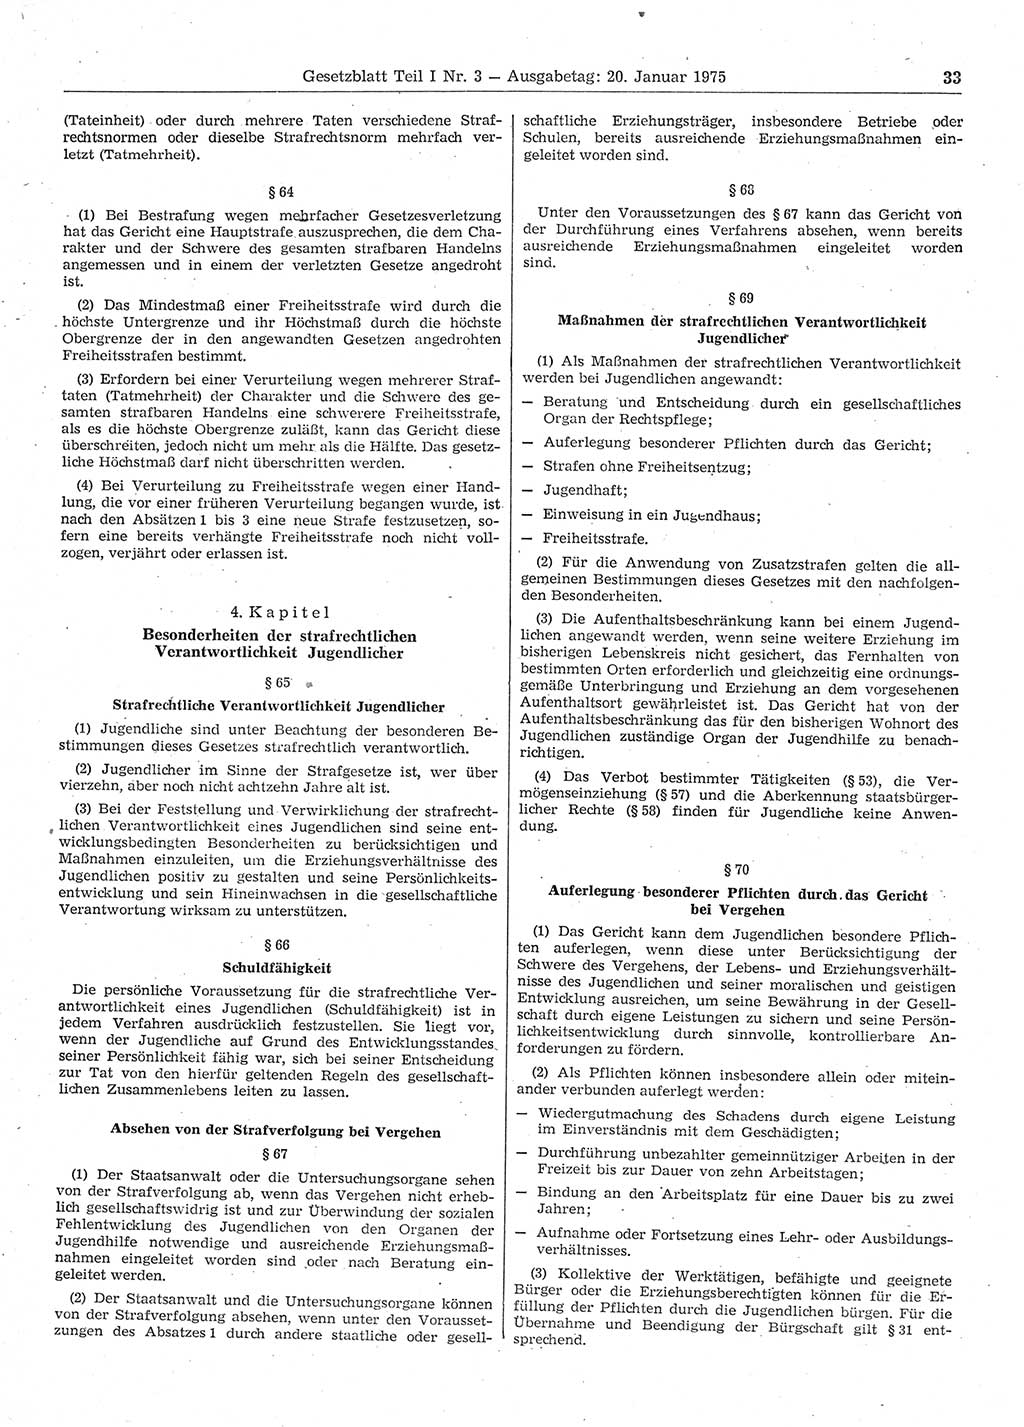 Gesetzblatt (GBl.) der Deutschen Demokratischen Republik (DDR) Teil Ⅰ 1975, Seite 33 (GBl. DDR Ⅰ 1975, S. 33)